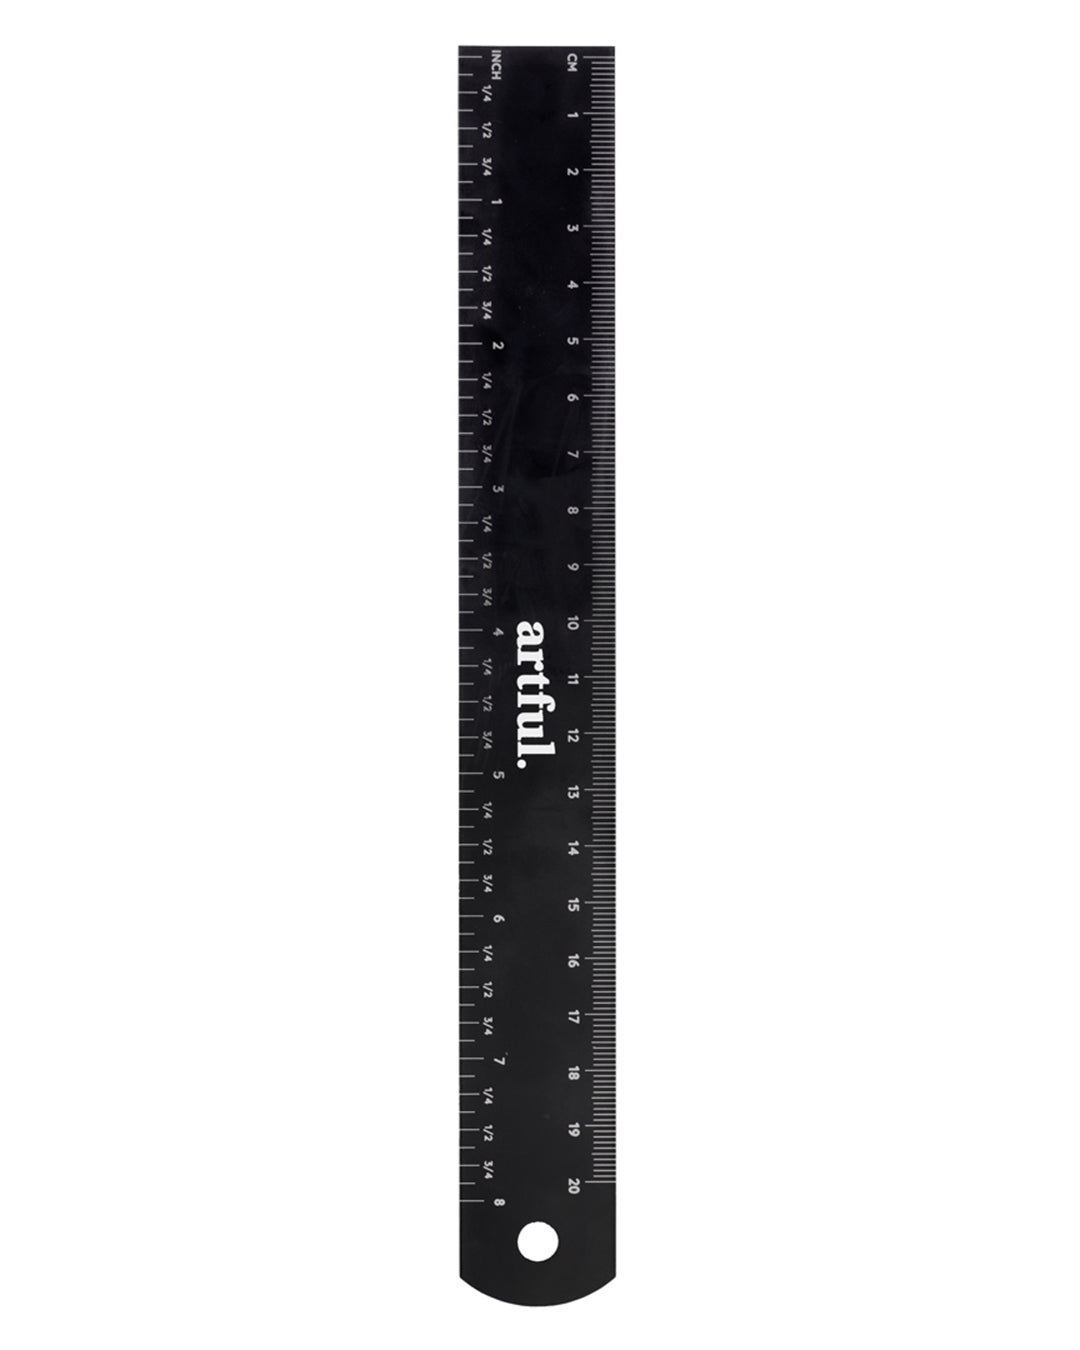 Artful Black Metal Ruler 20cm